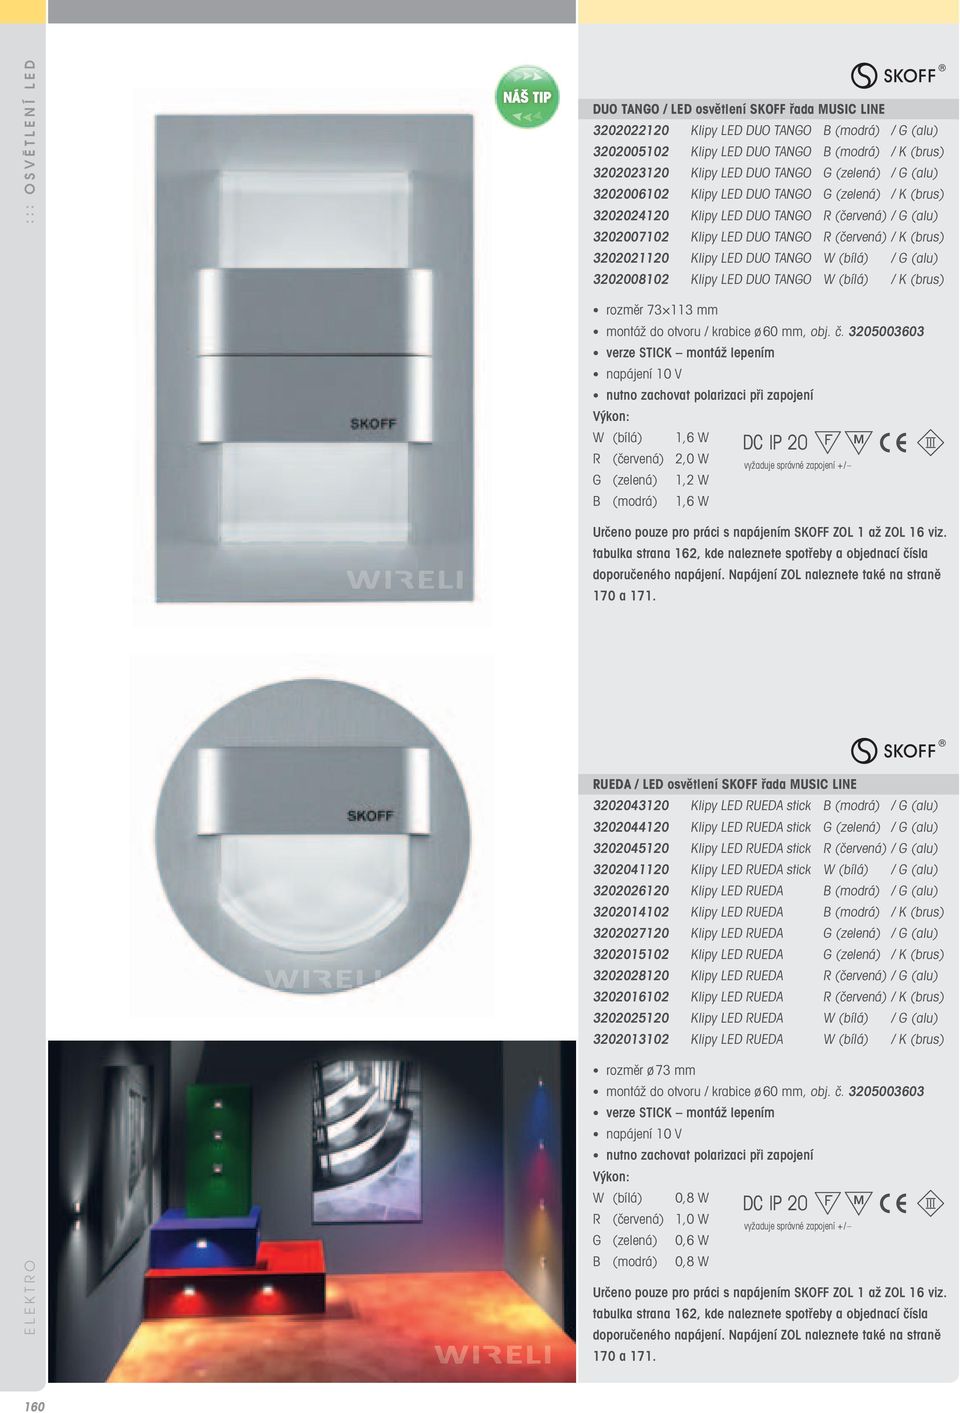 LED DUO TANGO W (bílá) / G (alu) 3202008102 Klipy LED DUO TANGO W (bílá) / K (brus) rozměr 73 113 mm montáž do otvoru / krabice ø 60 mm, obj. č.